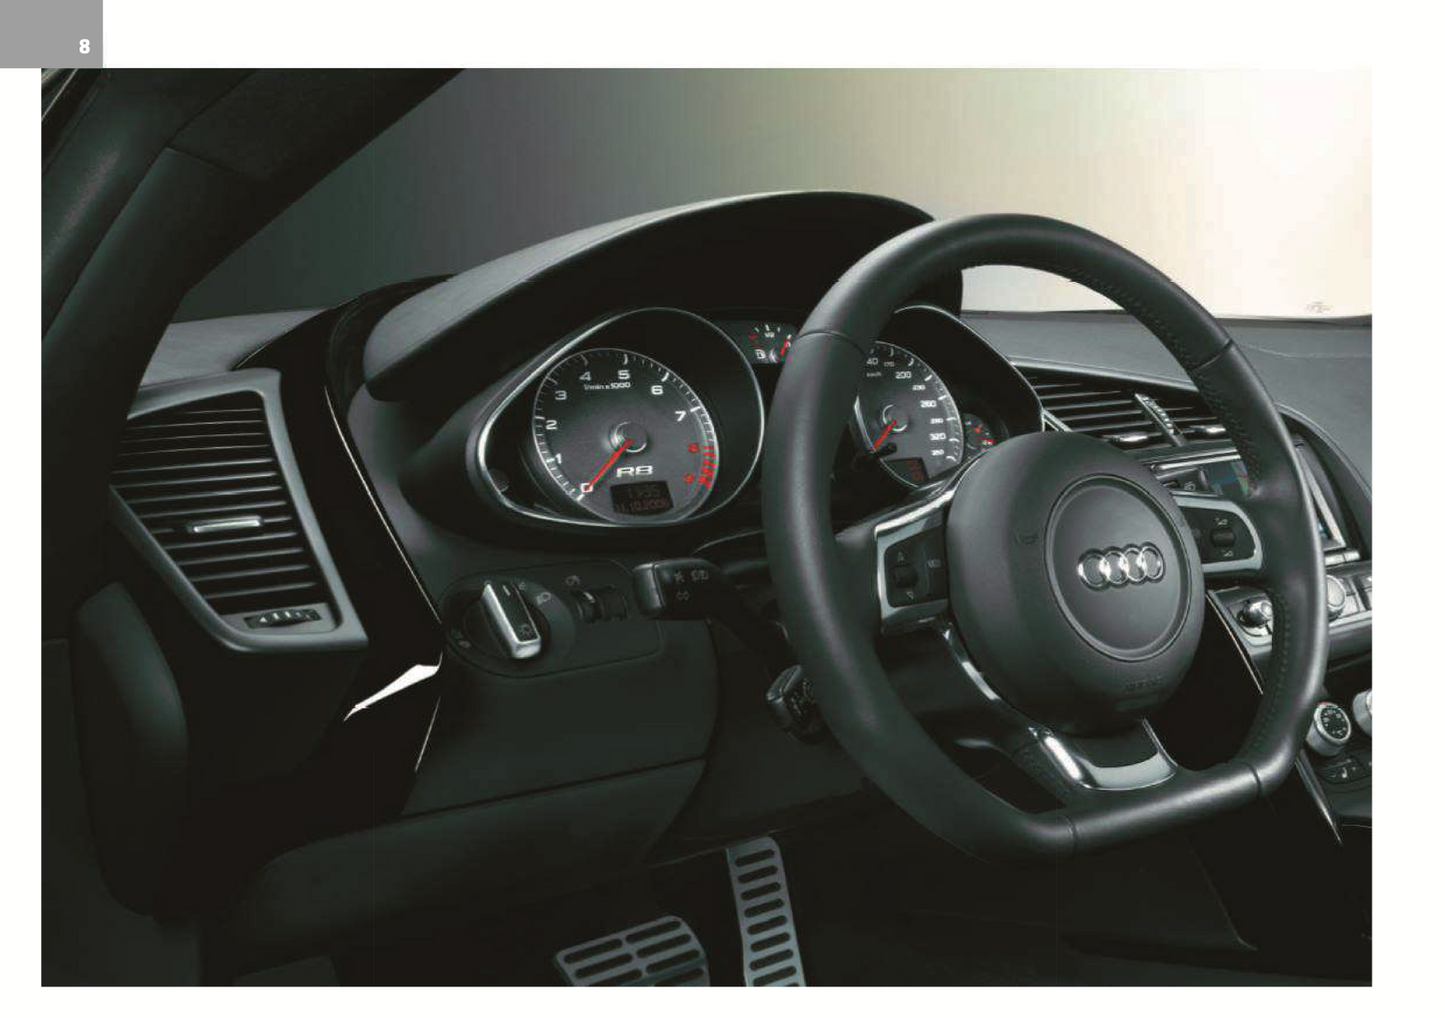 2008 Audi R8 Bedienungsanleitung | Englisch